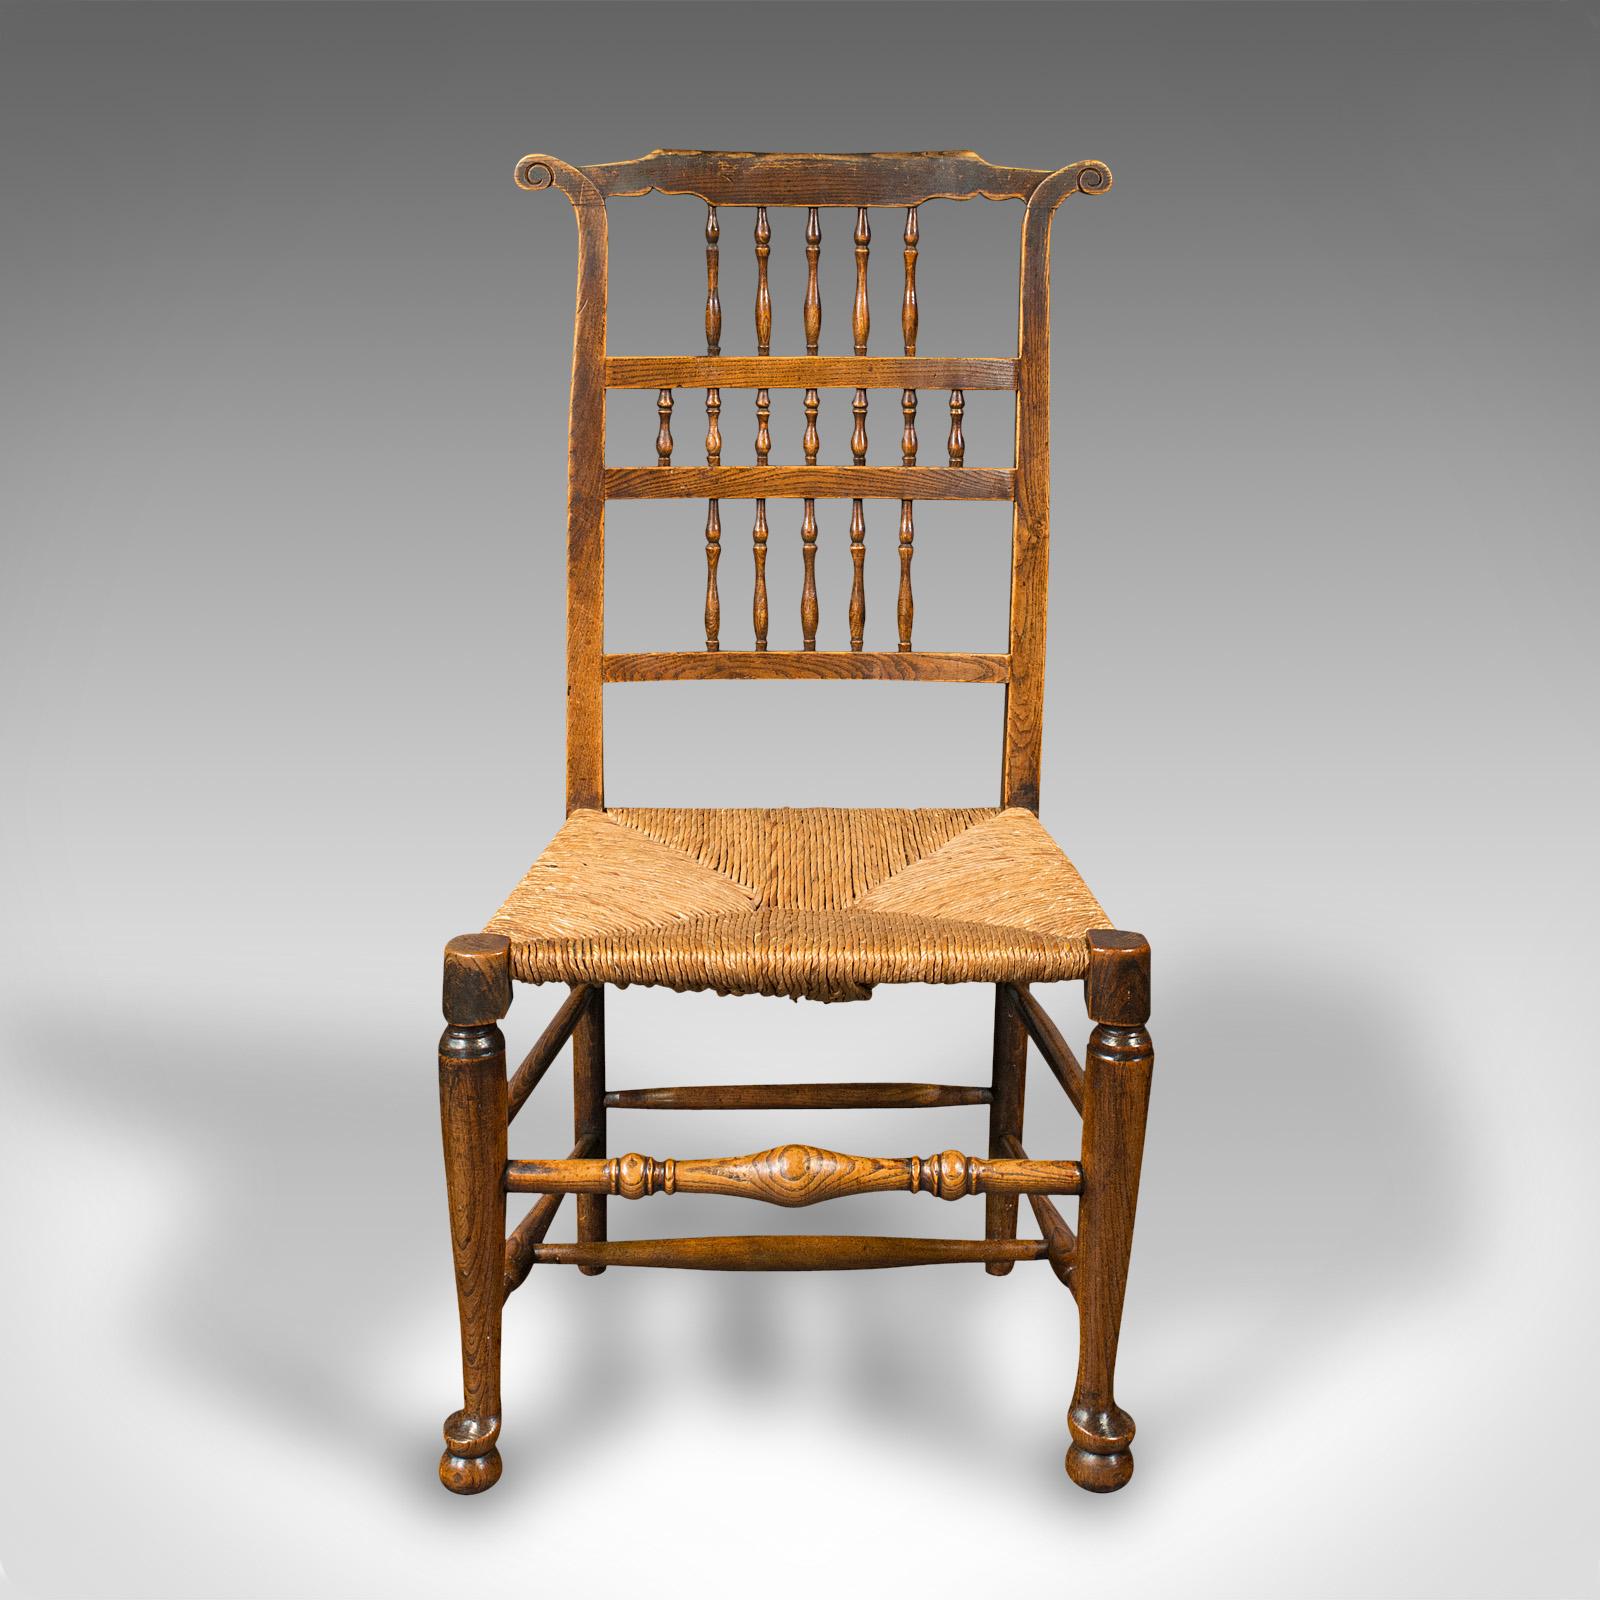 Dies ist ein Paar von antiken Spindellehne Binsen Land Stühle. Ein englischer Dielen- oder Esszimmerstuhl aus Eiche im Lancashire-Geschmack aus der frühen viktorianischen Zeit um 1850.

Entzückende Rückenlehne mit siebzehn Spindeln und